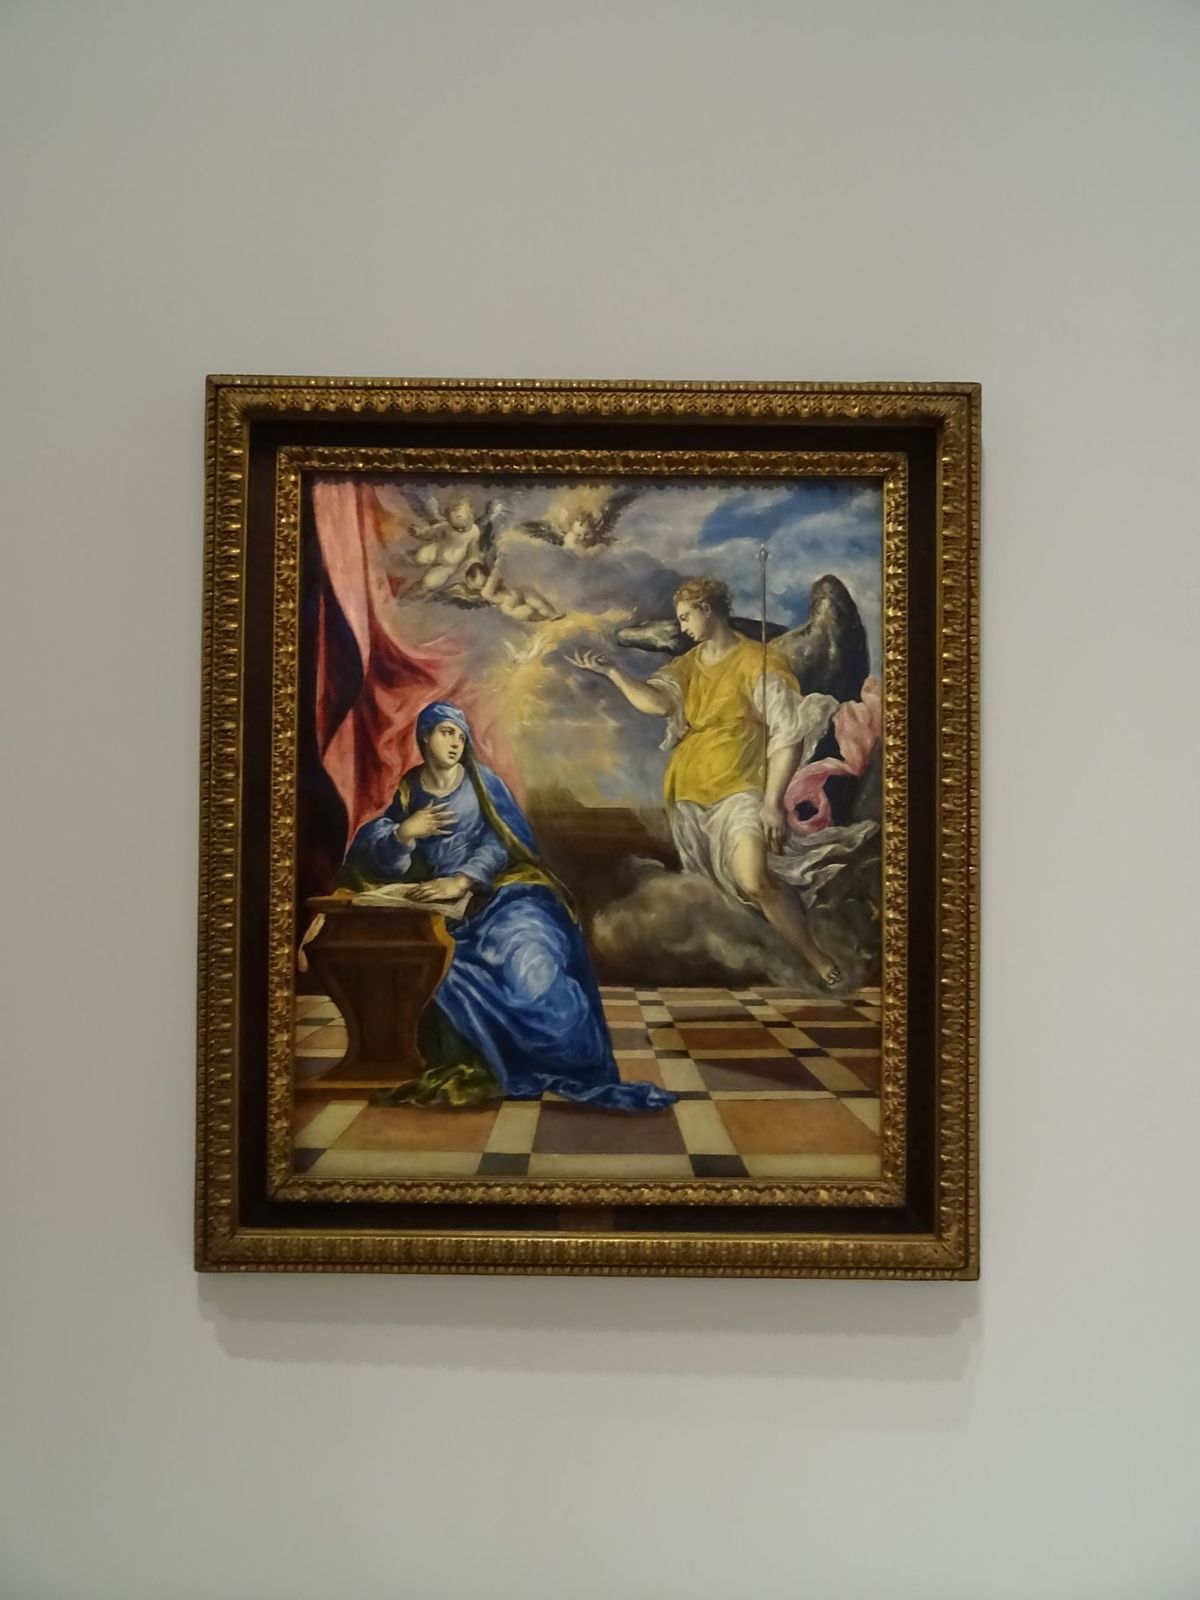 L'Annonciation (vers 1576). Probablement une des dernières toiles peintes en Italie. On y voit l'apport de toute cette période italienne et notamment l'utilisation des couleurs à la vénitienne même si la composition et le dessin doivent beaucoup à Michel-Ange et aux autres grands peintres florentins et romains.